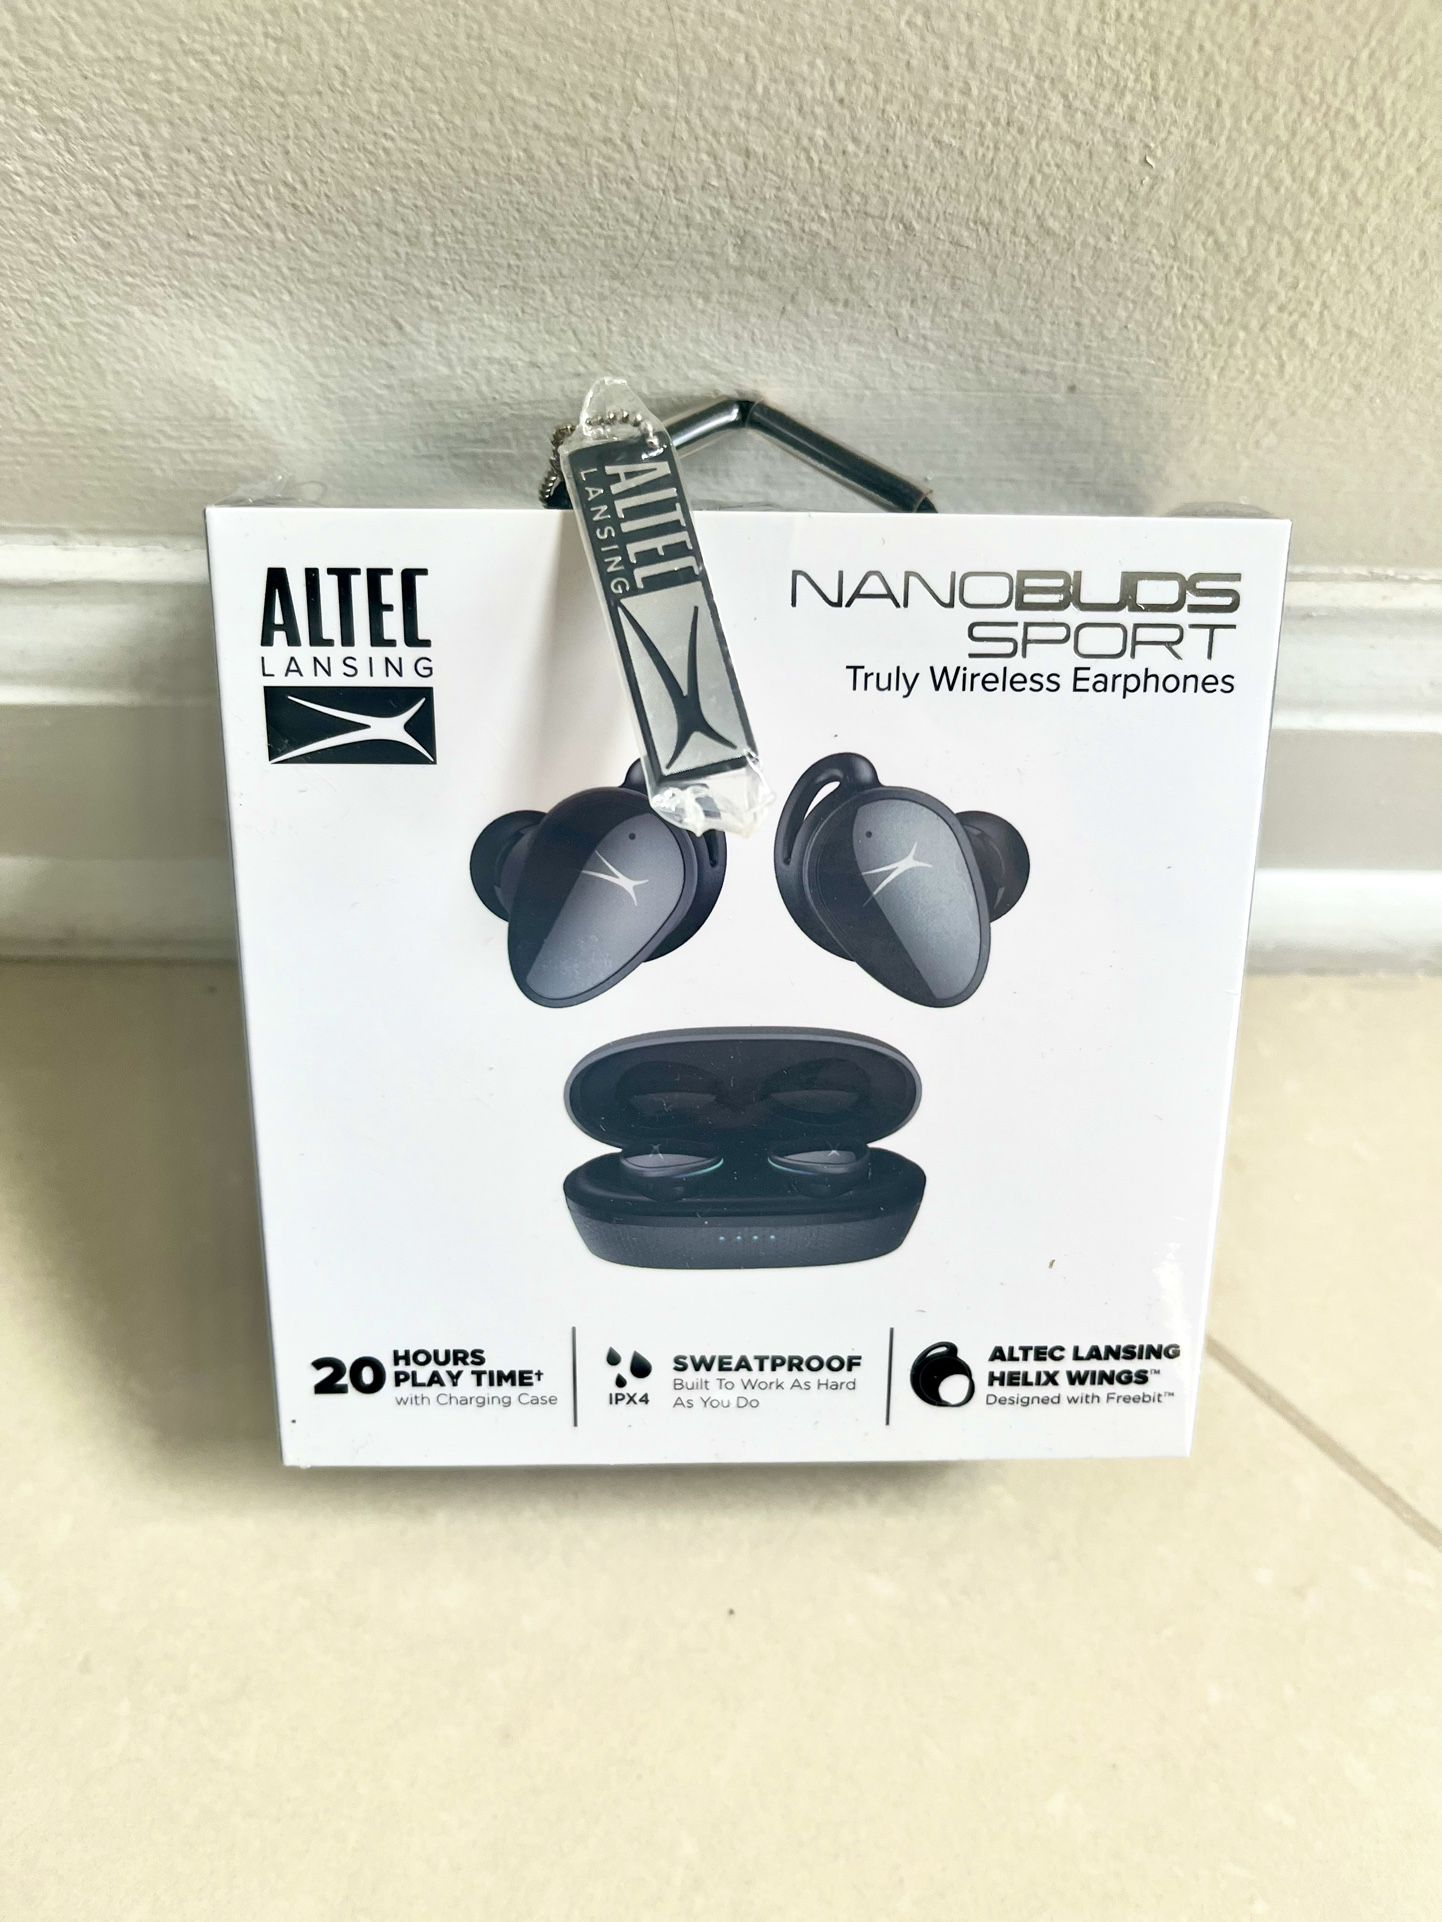 NEW Altec Lansing NanoBuds Sport True Wireless In Ear Earbuds - Gray !